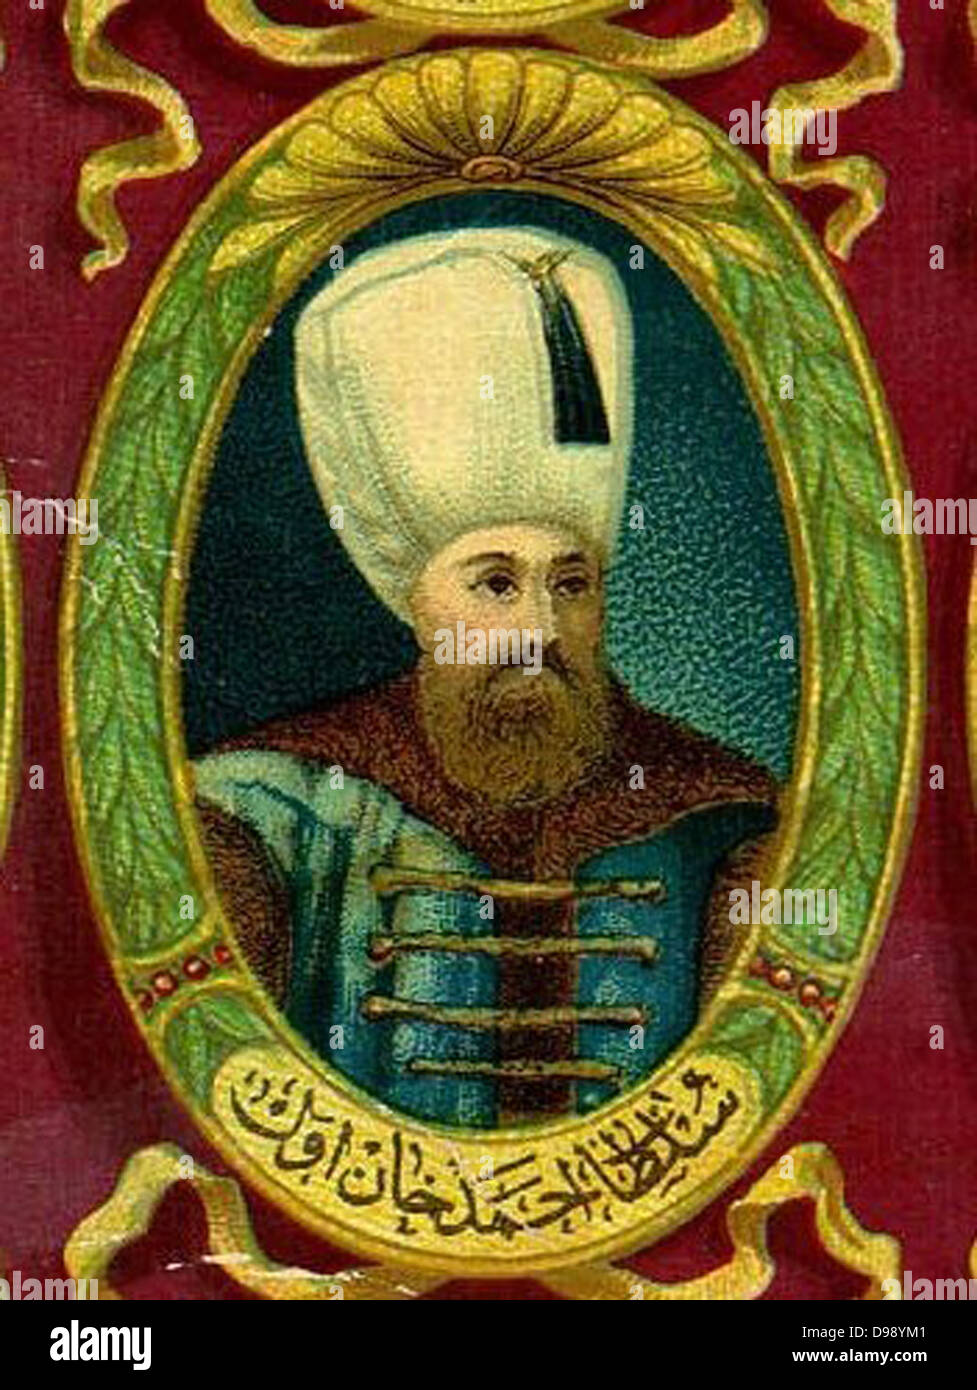 Mehmet III Adli 26 Mai 1566 – Dezember 21/22, 1603 Sultan des Osmanischen Reiches aus dem Jahre 1595 bis zu seinem Tod. Stockfoto